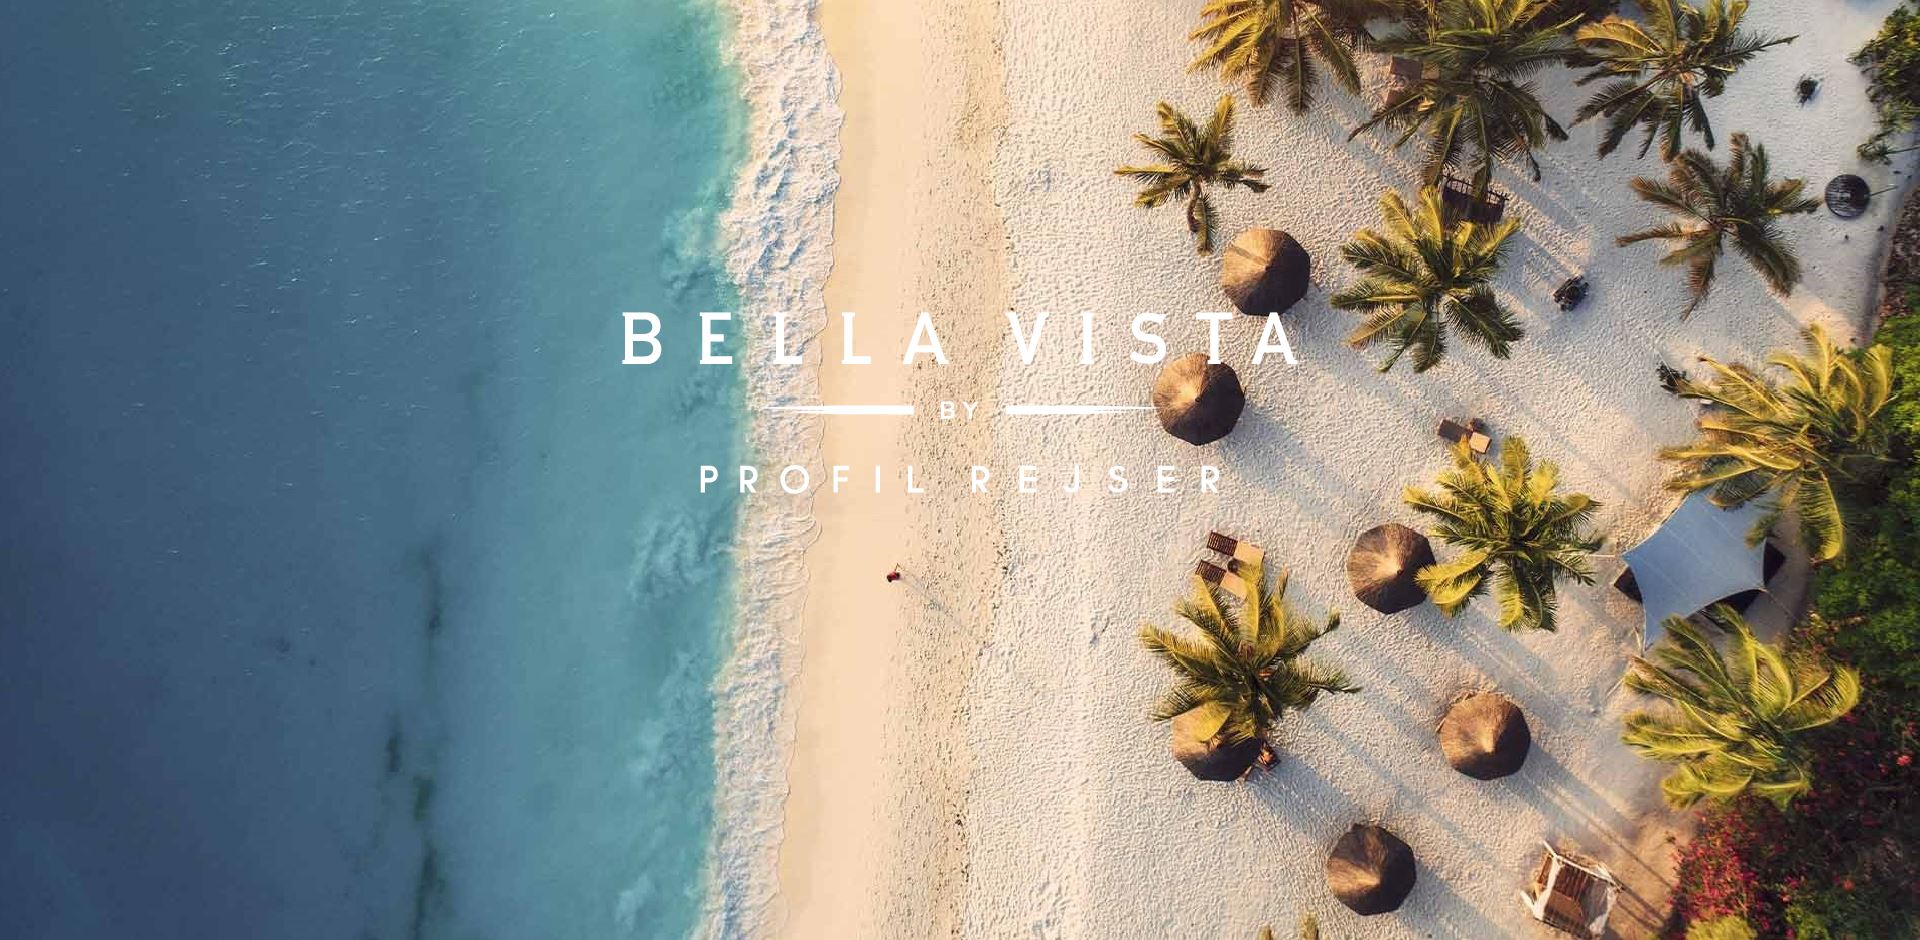 Bella Vista by Profil Rejser